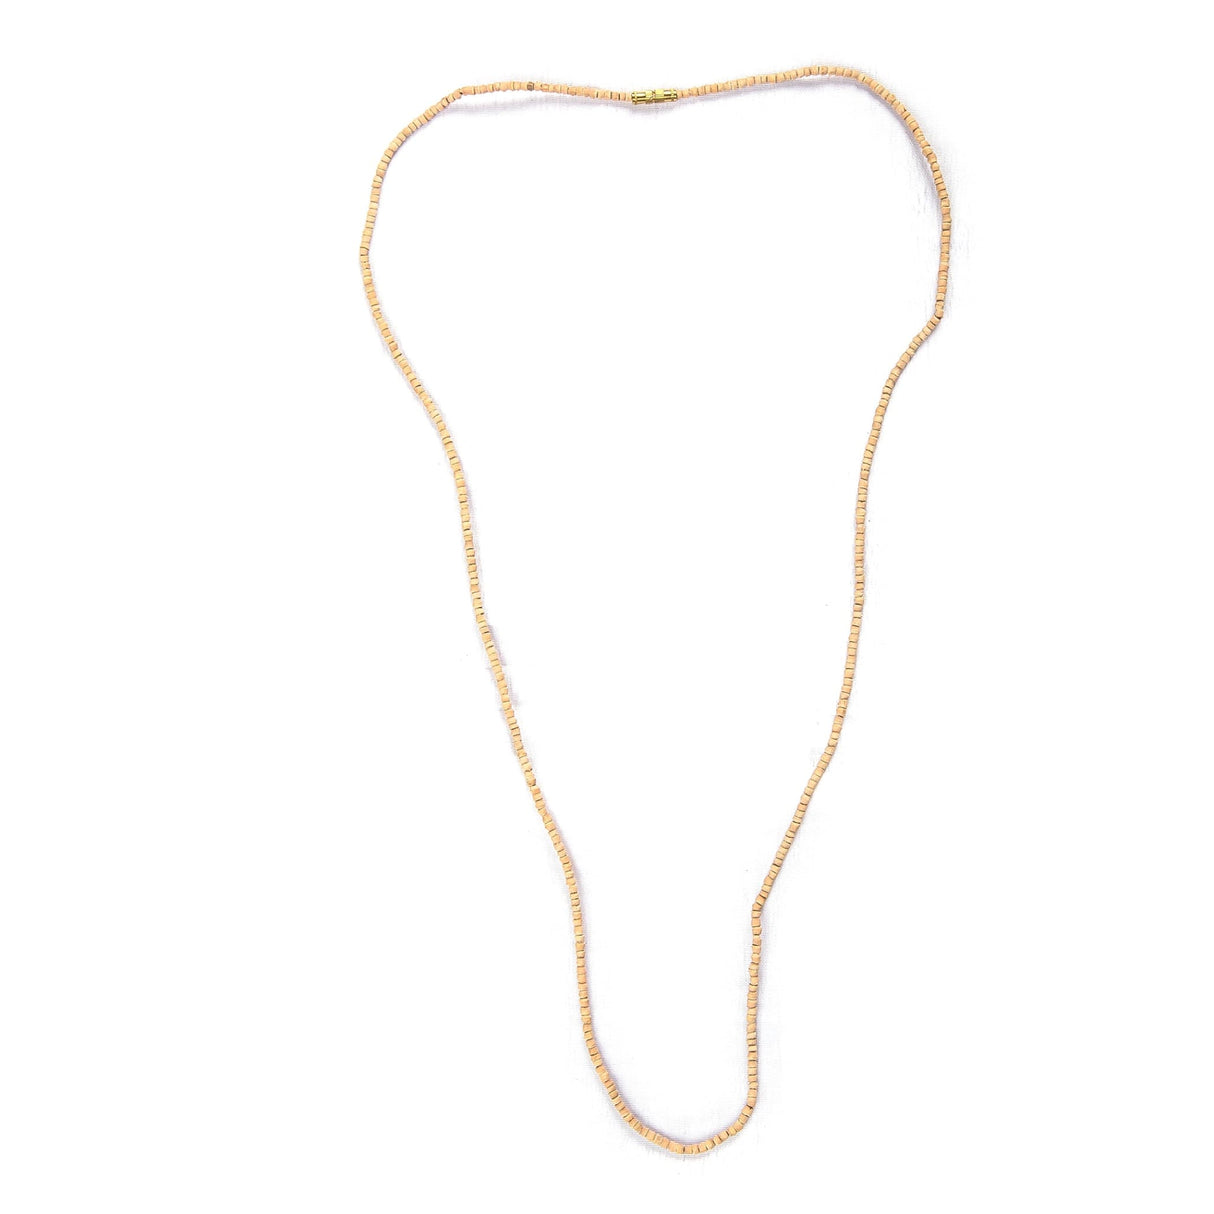 Tulsi mala beads necklace holy basil 108 + 1 ram japa